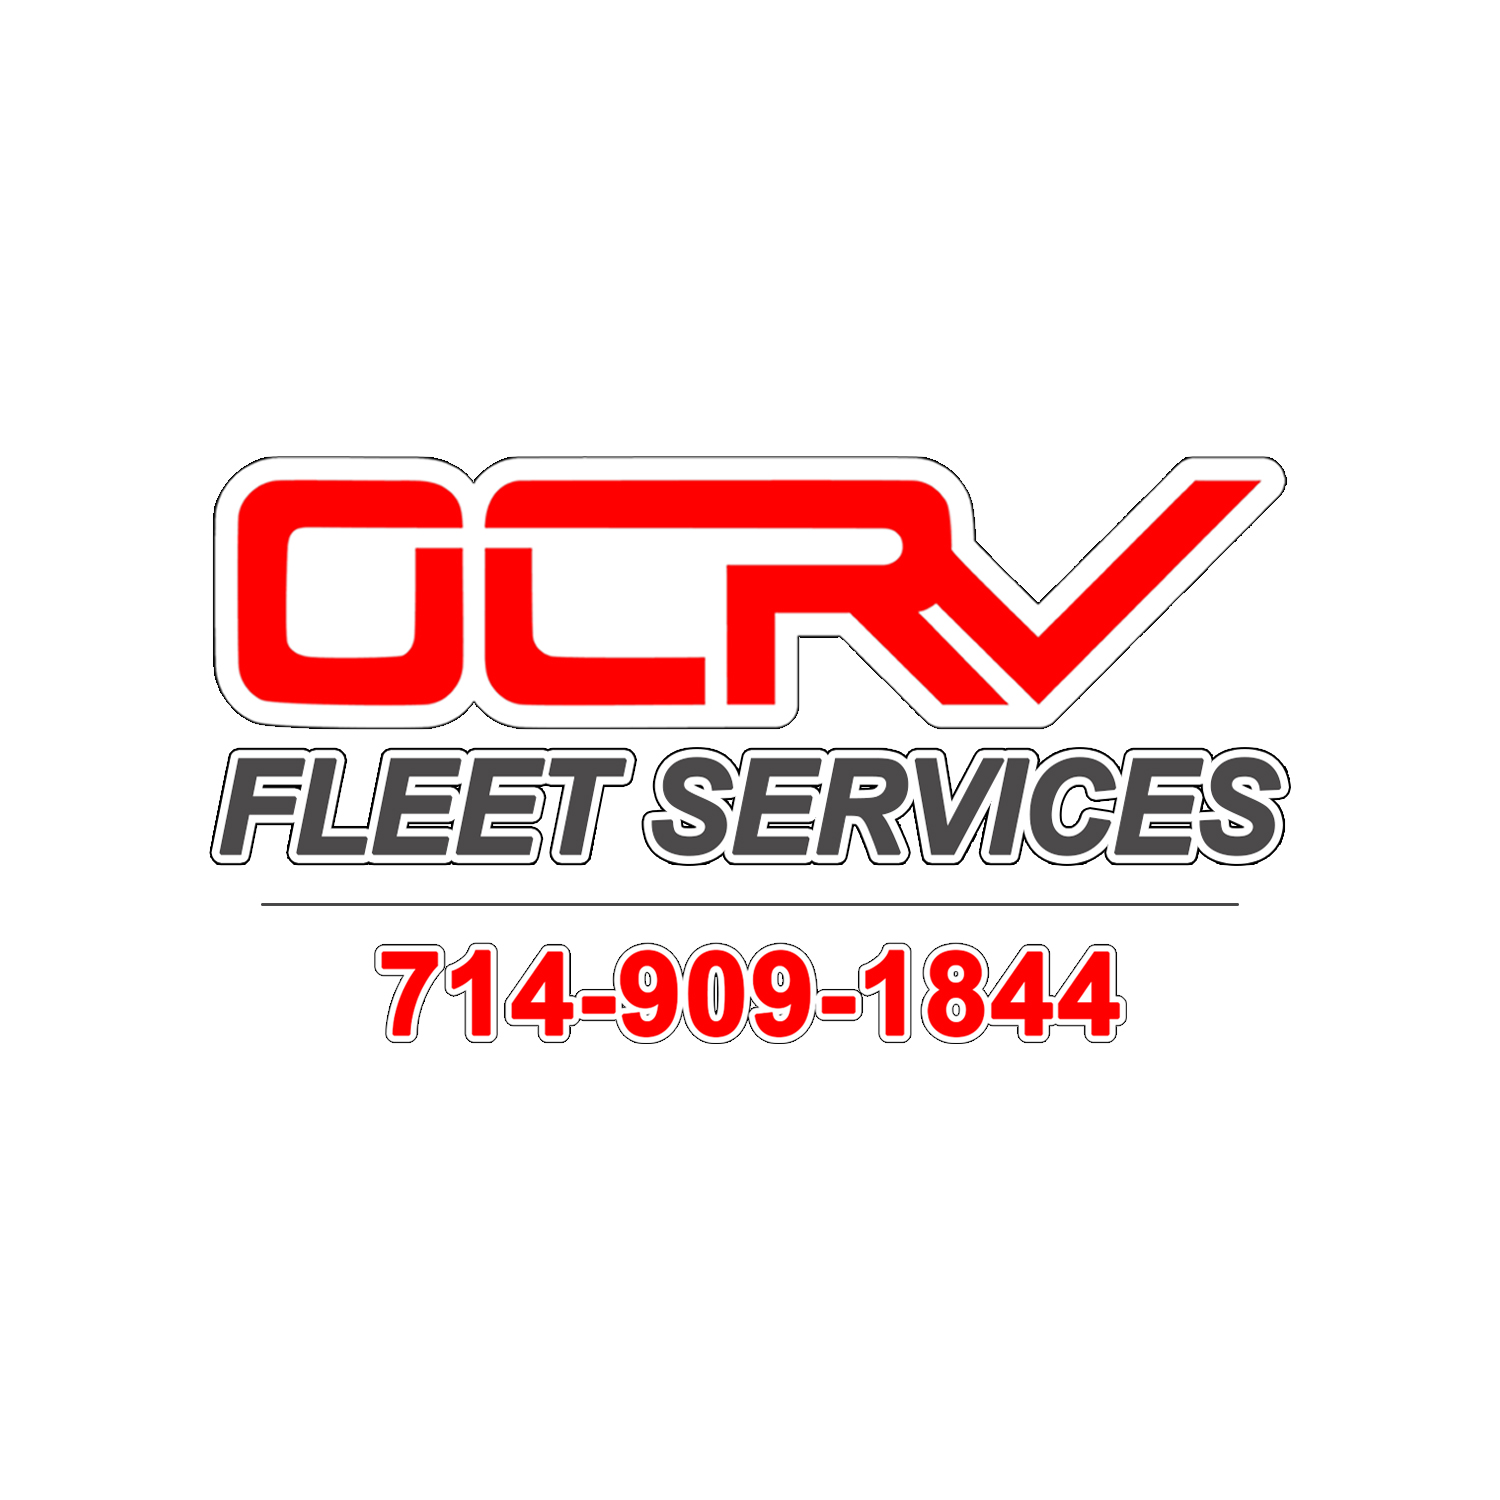 OCRV Fleet Services - Commercial Truck Collision Repair & Paint Shop's Logo